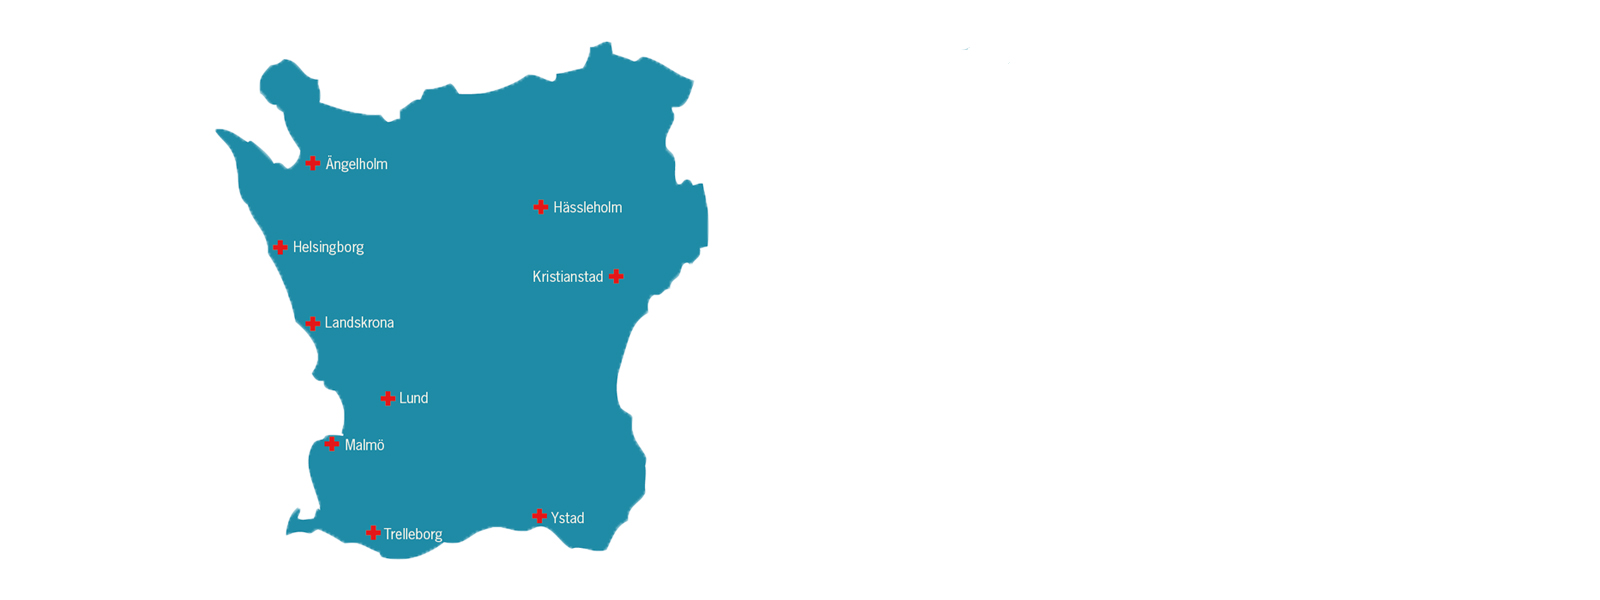 Karta över Skåne med sjukhusen utmärkta.